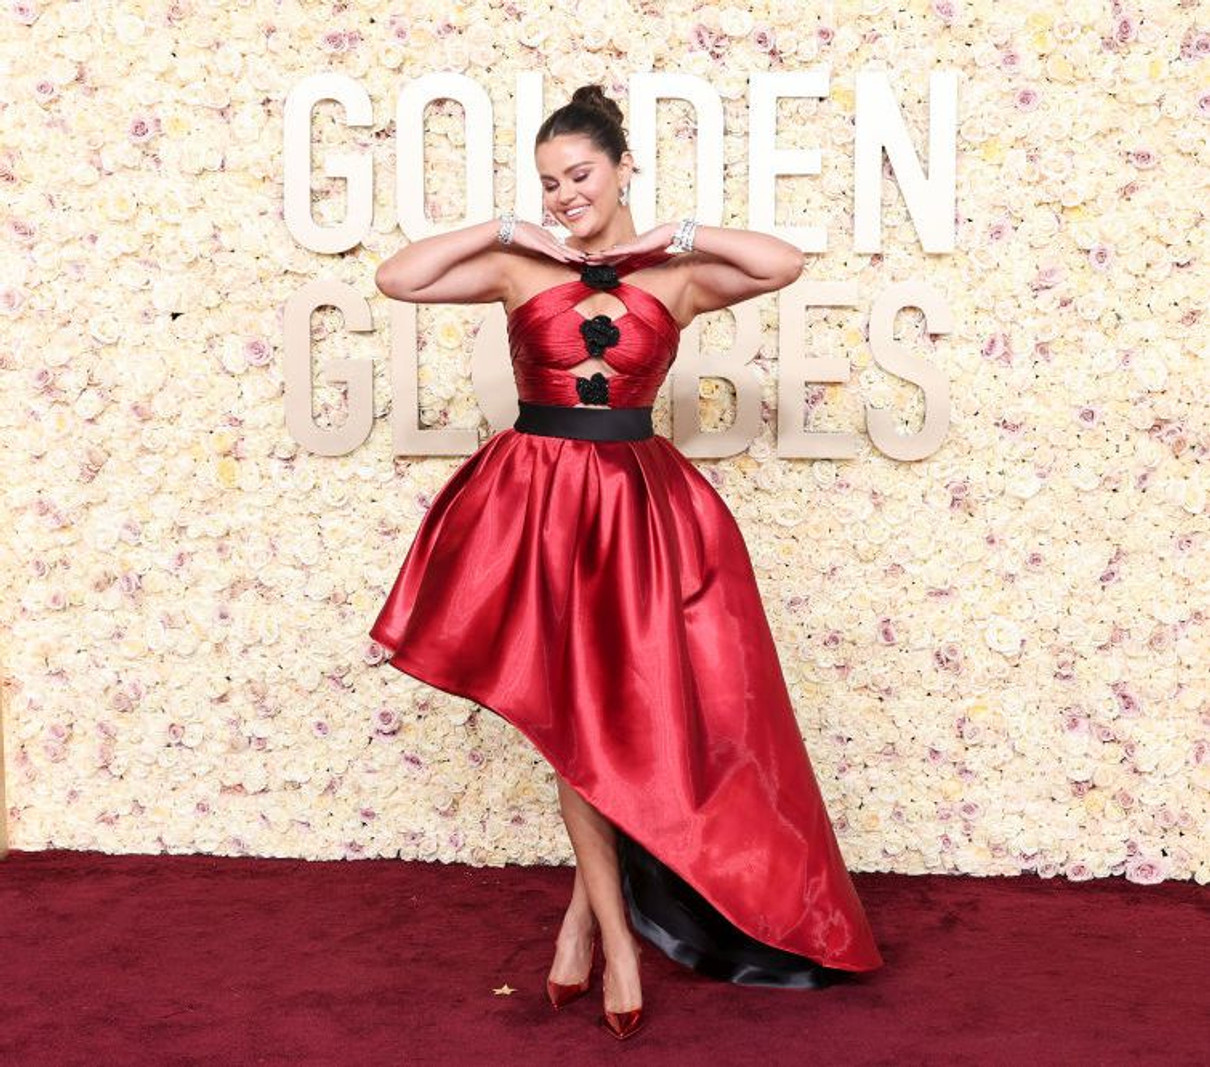 Співачка і актрис Селена Гомес в червоно-чорній асиметричній сукні від Armani Prive виглядала закоханою та романтичною 